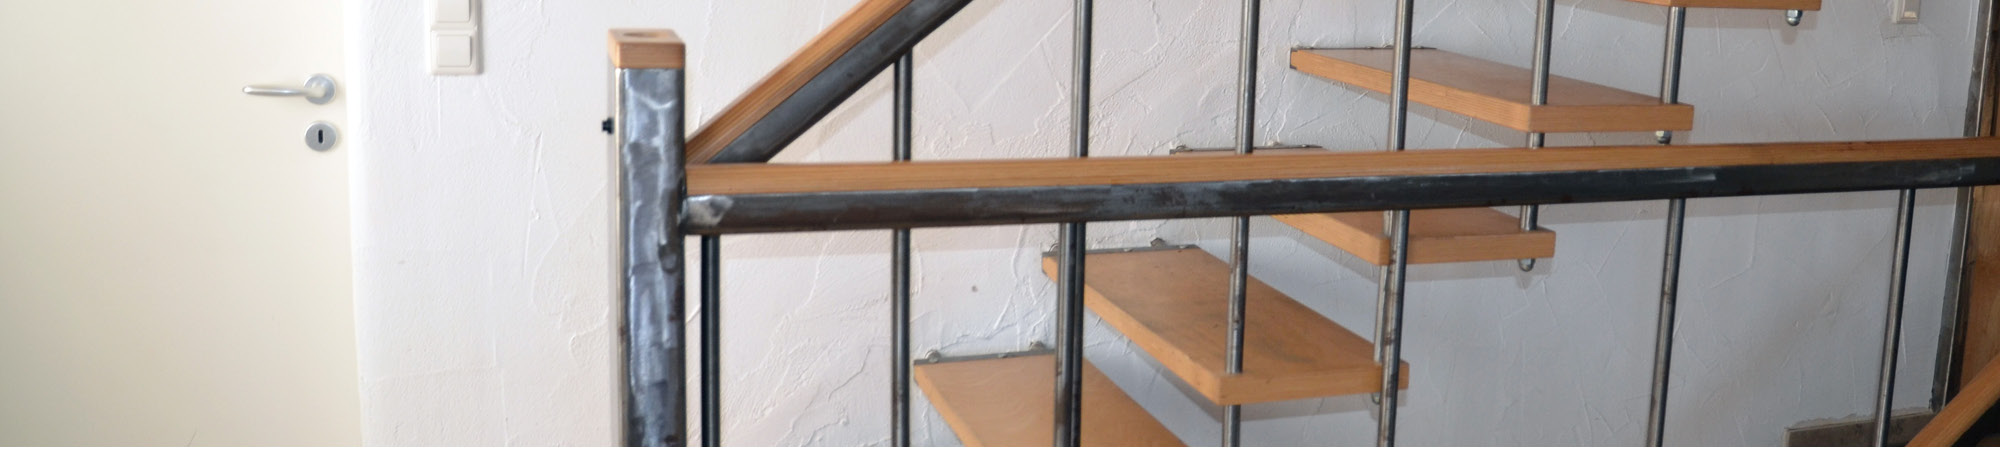 Möbelwerkstatt - Treppen